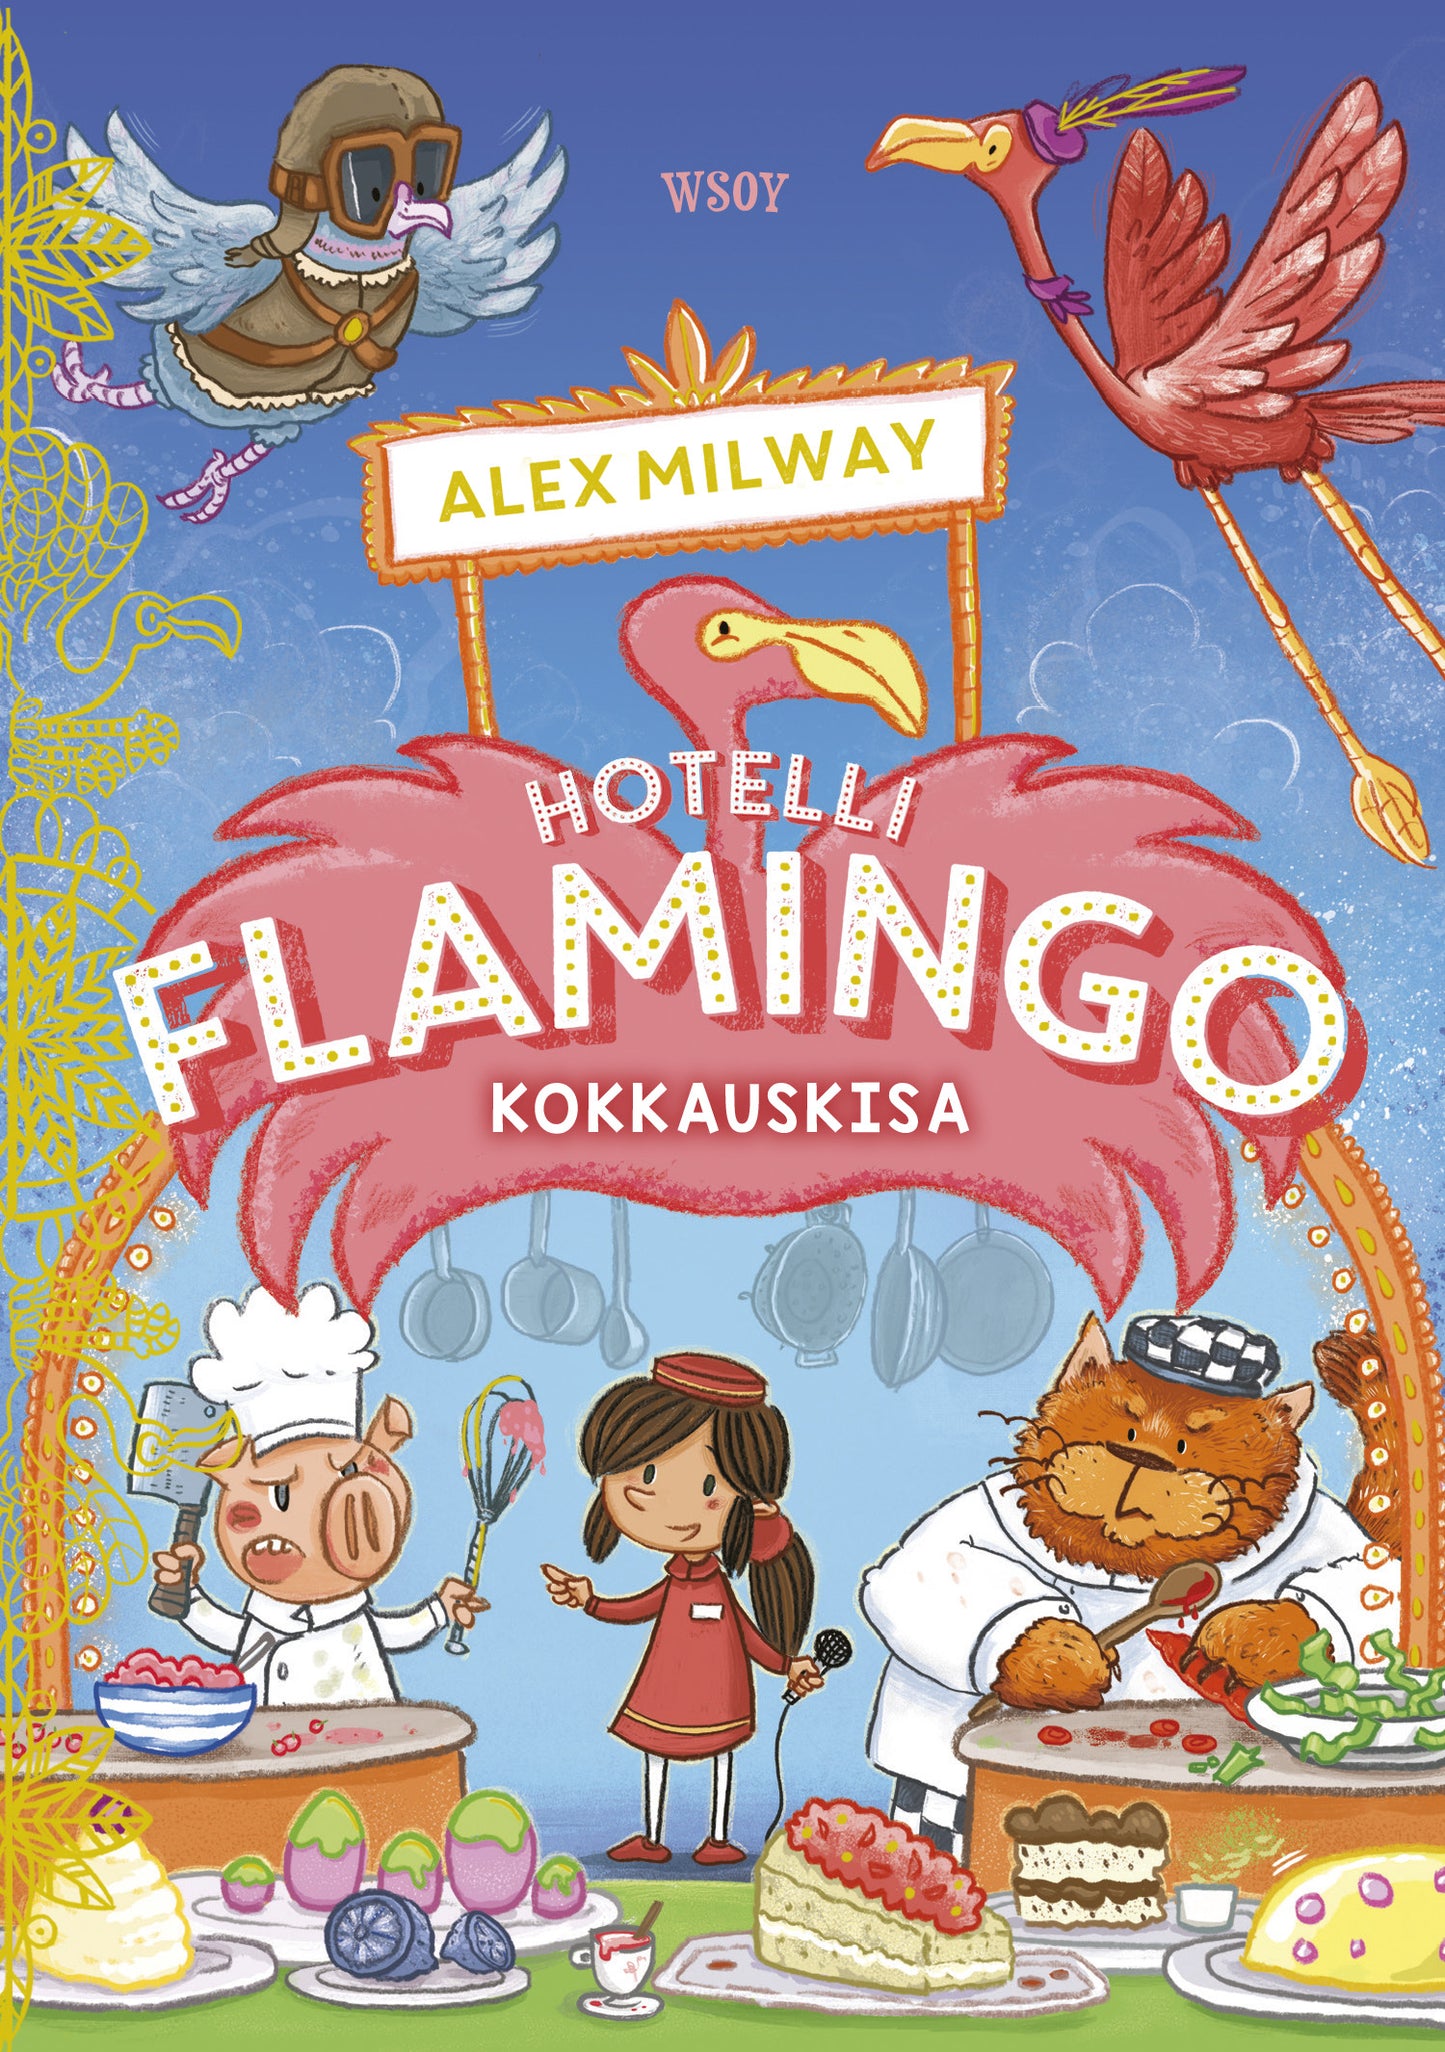 Hotelli Flamingo: Kokkauskisa